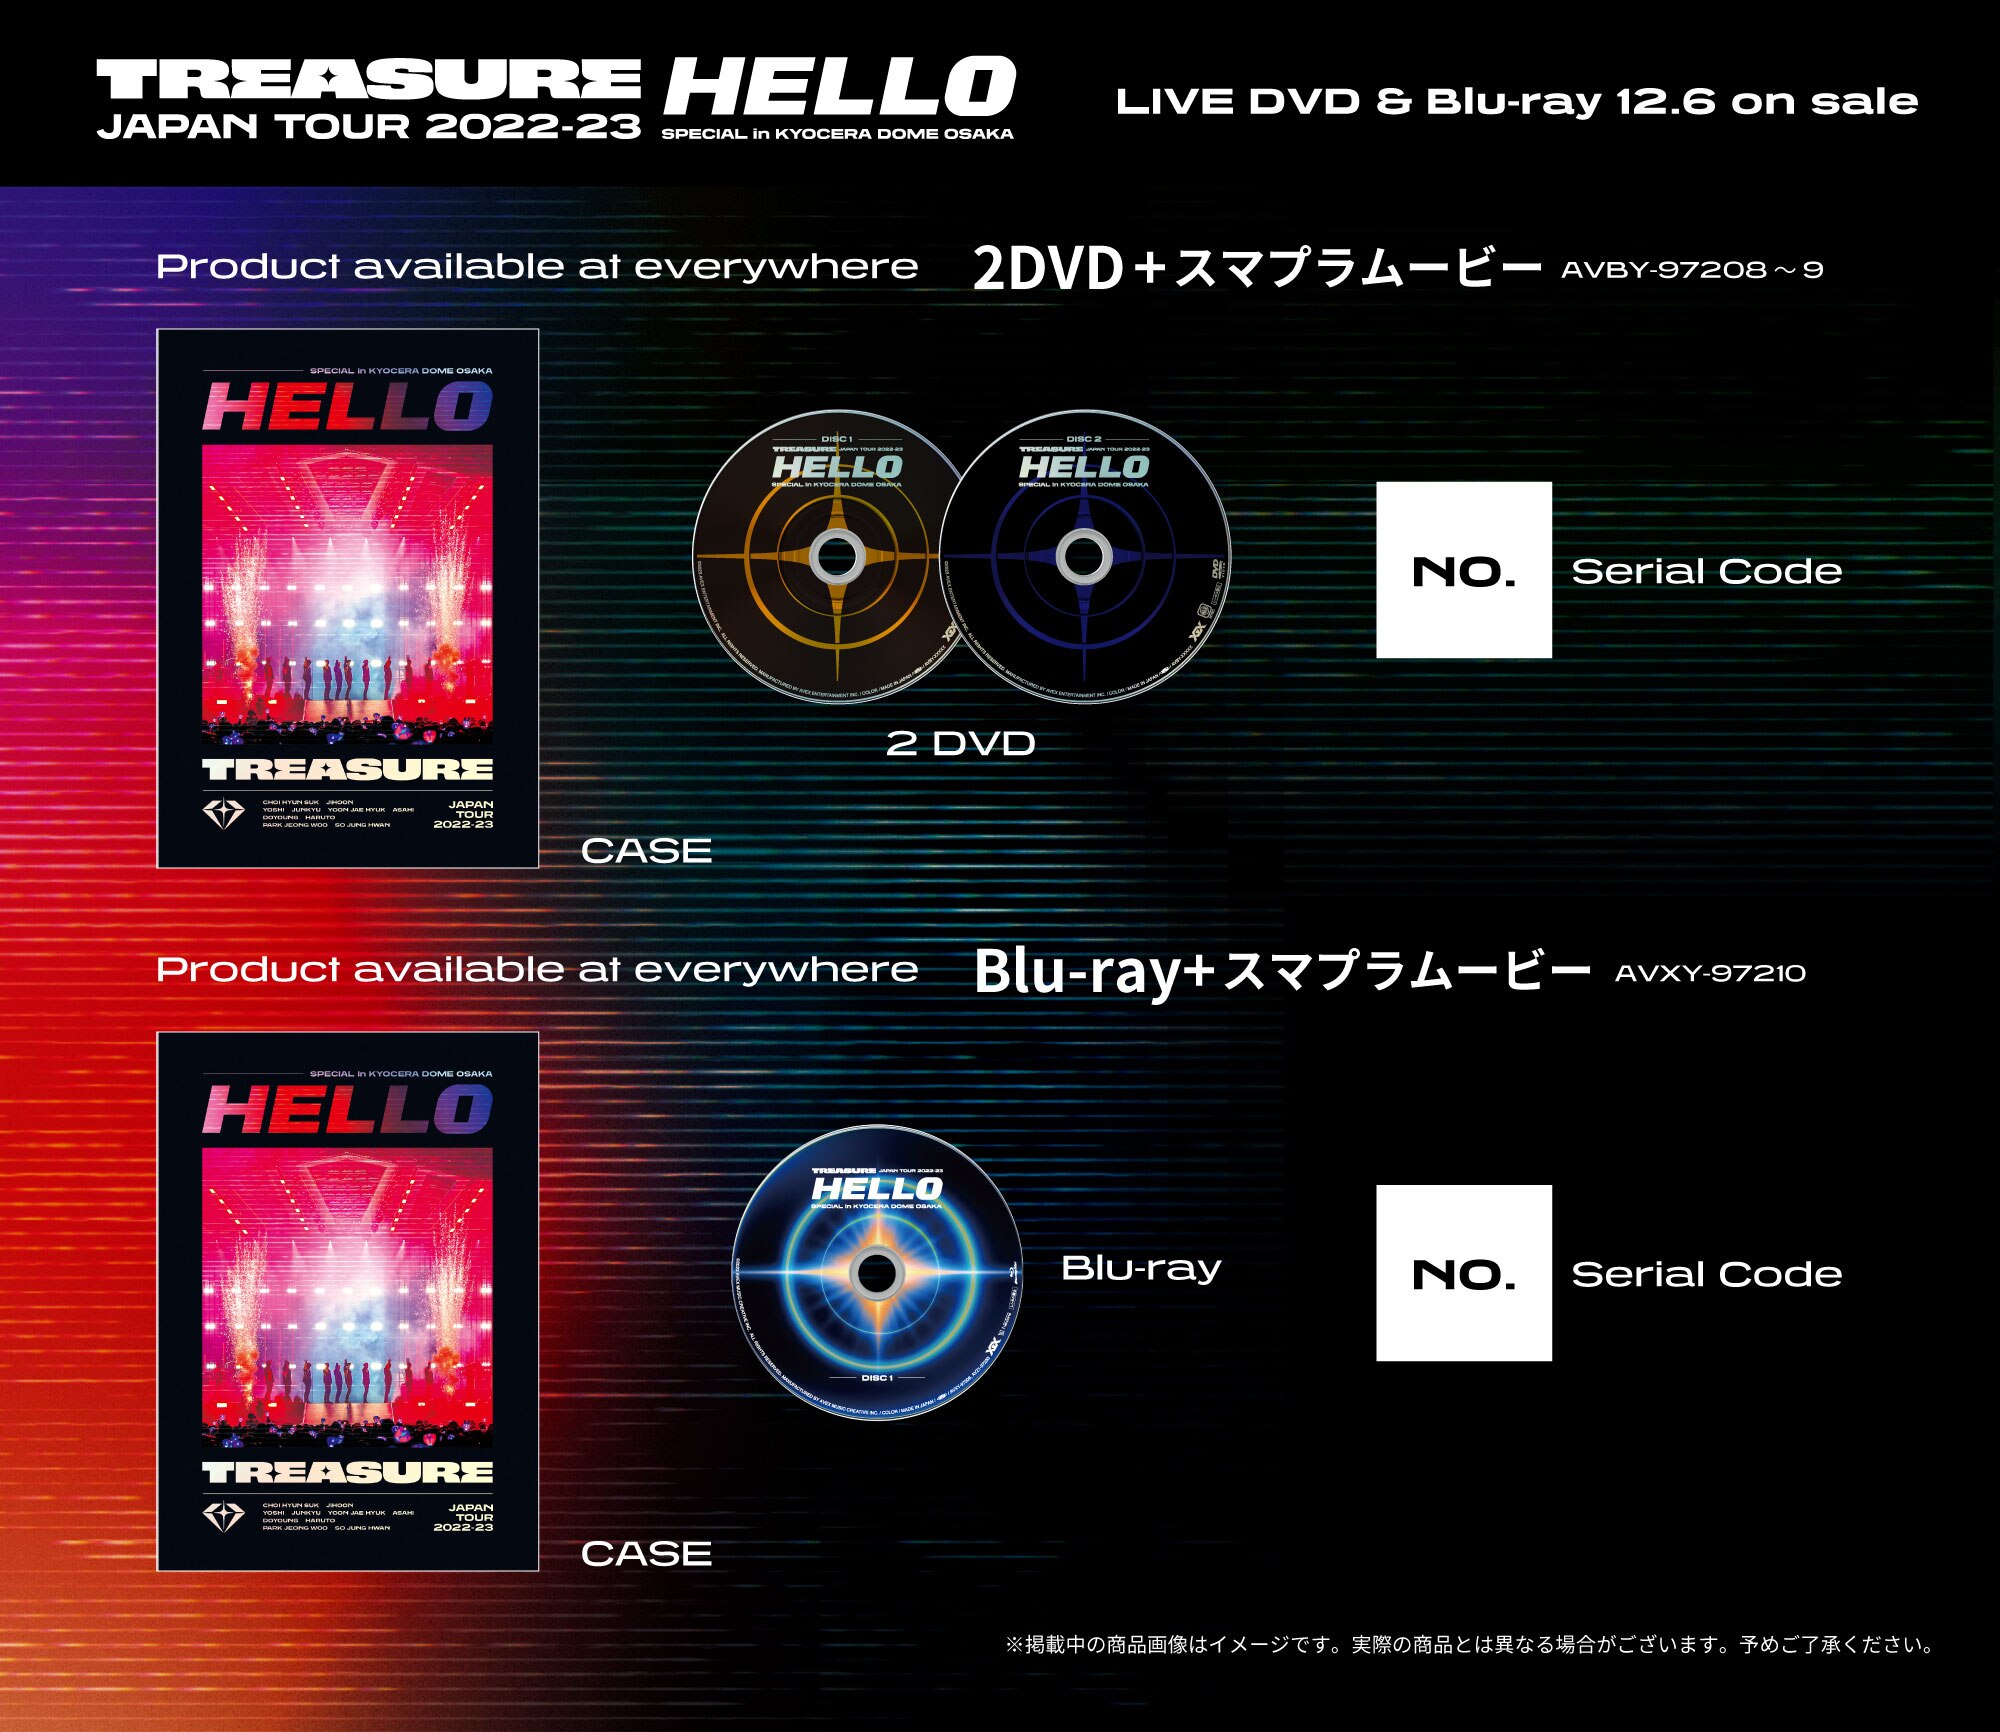 シリアル付き！TREASURE HELLO Blu-ray 初回限定生産盤会場予約の初回